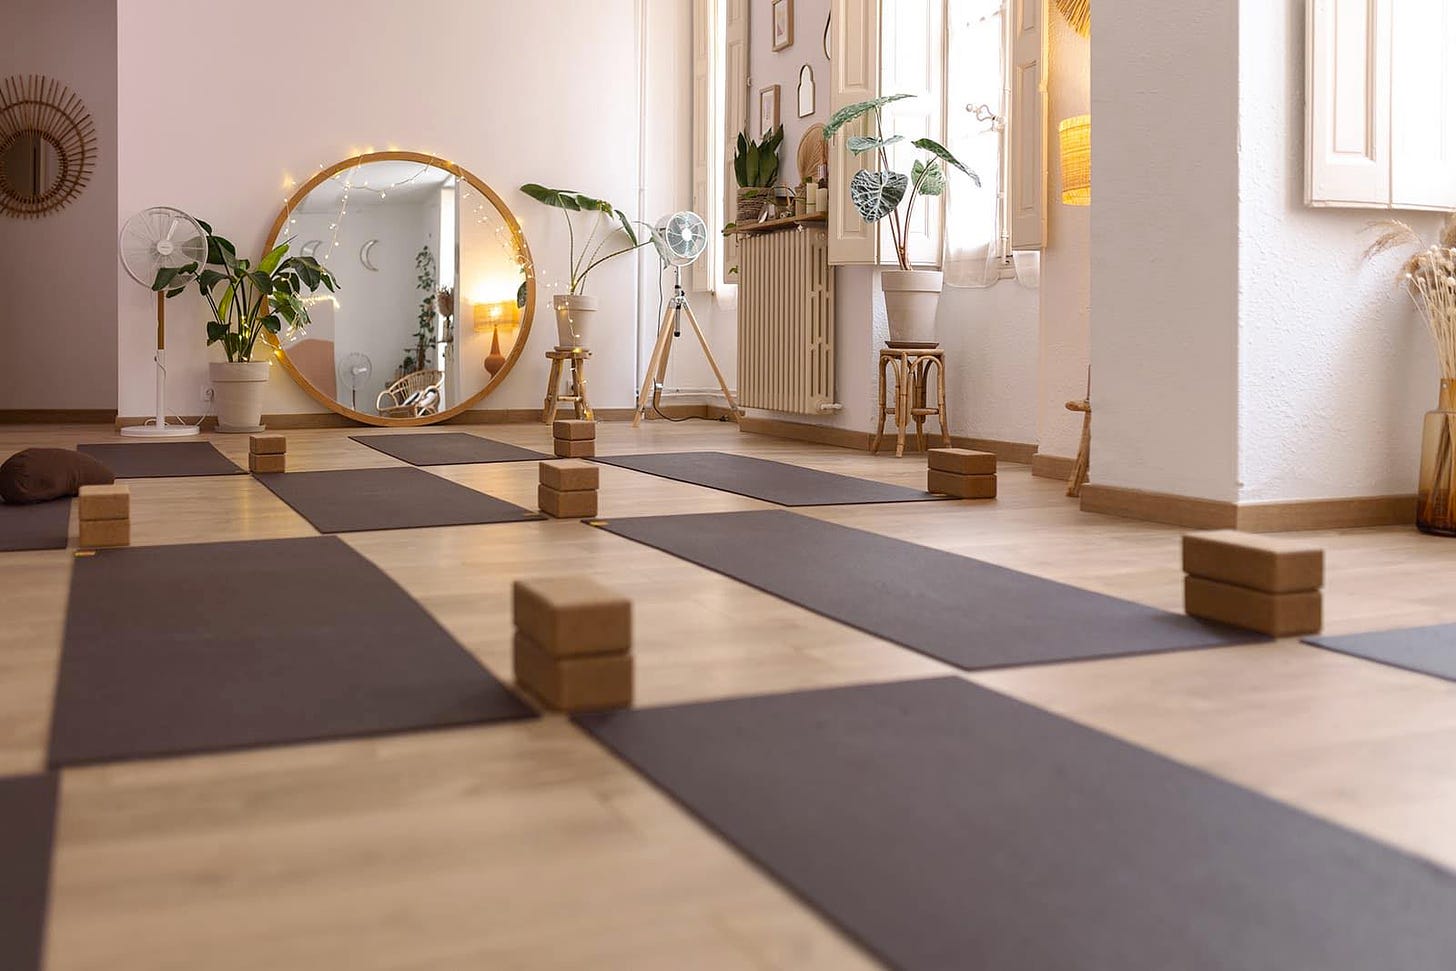 Holy Yoga studio in Nîmes, France